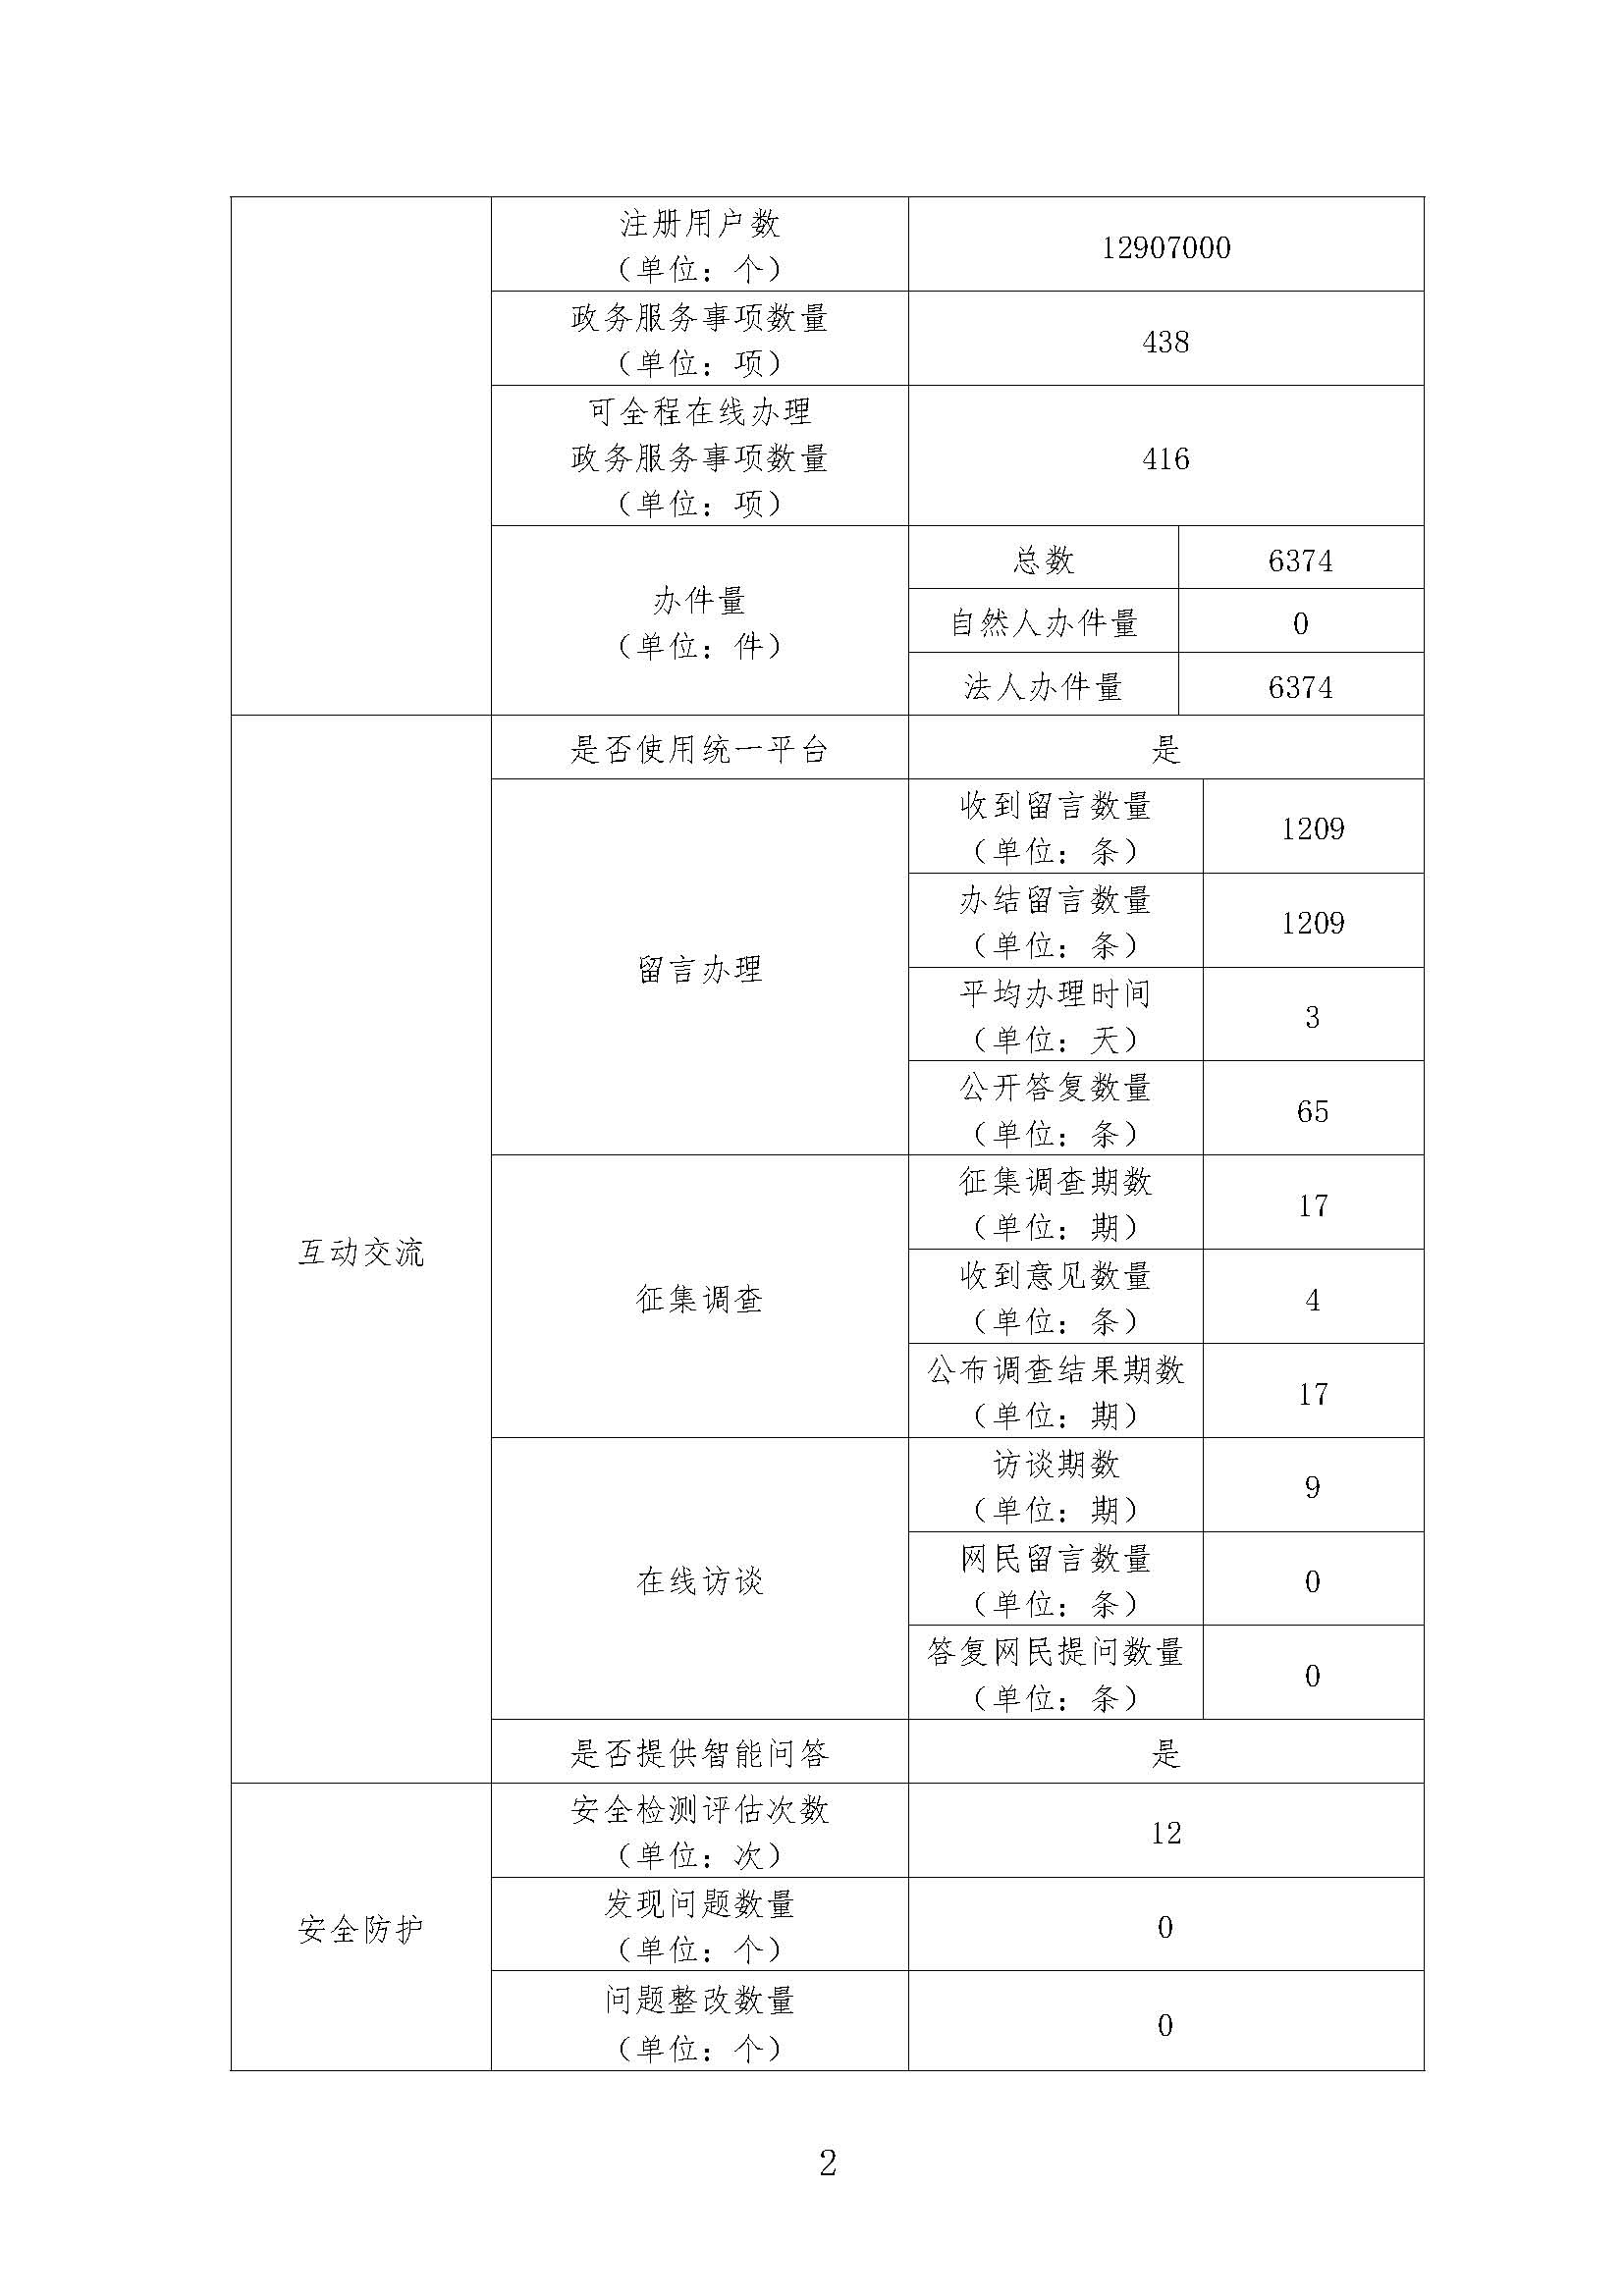 广东省文化和旅游厅2019年政府网站工作年度报表_页面_2.jpg